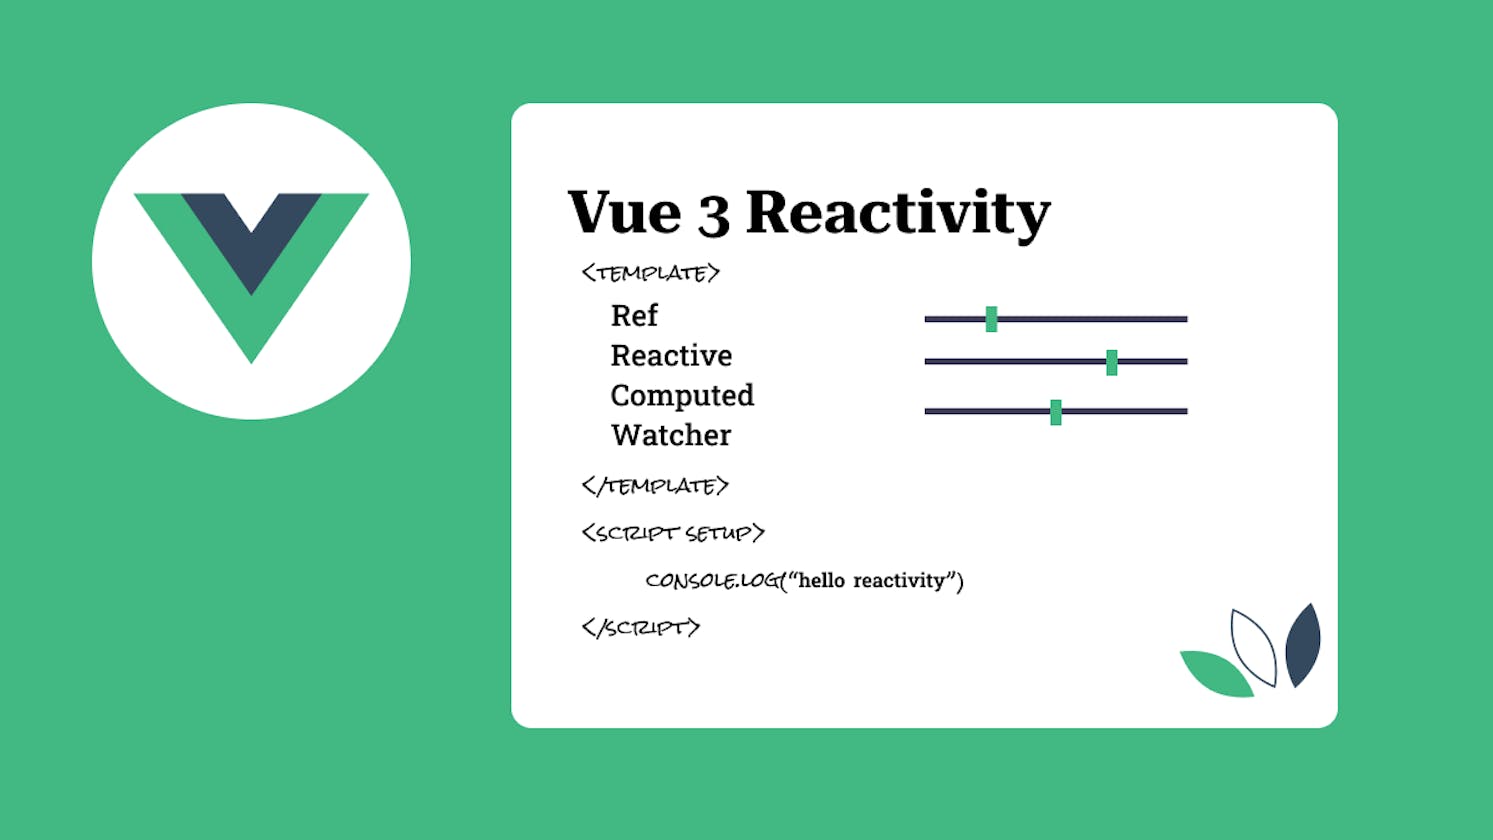 Using Reactivity in Vue 3